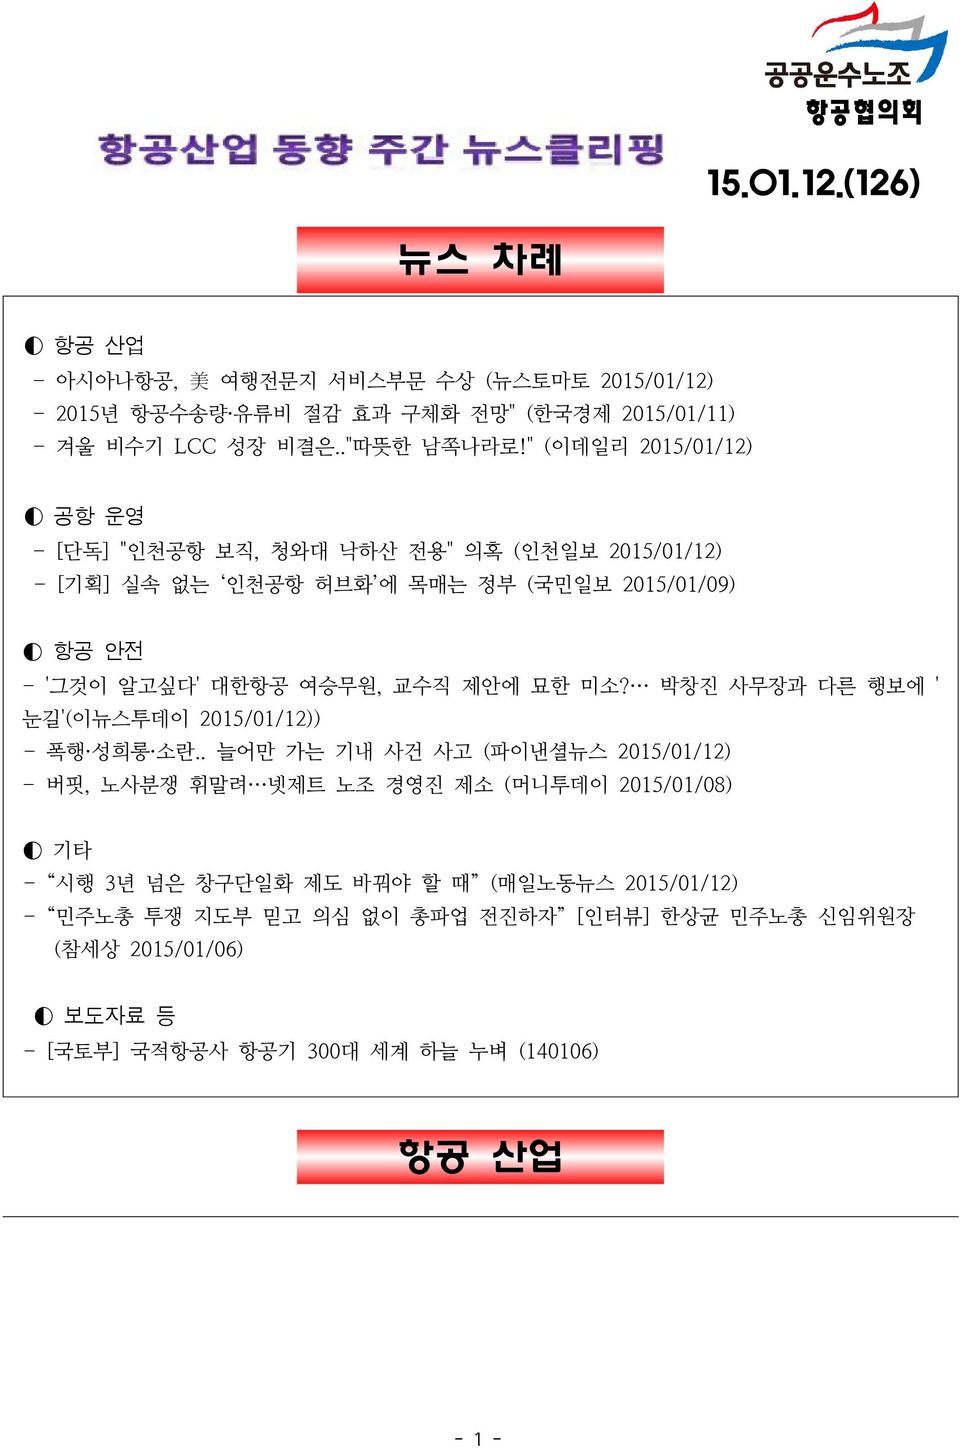 묘한 미소? 박창진 사무장과 다른 행보에 ' 눈길'(이뉴스투데이 2015/01/12)) - 폭행 성희롱 소란.